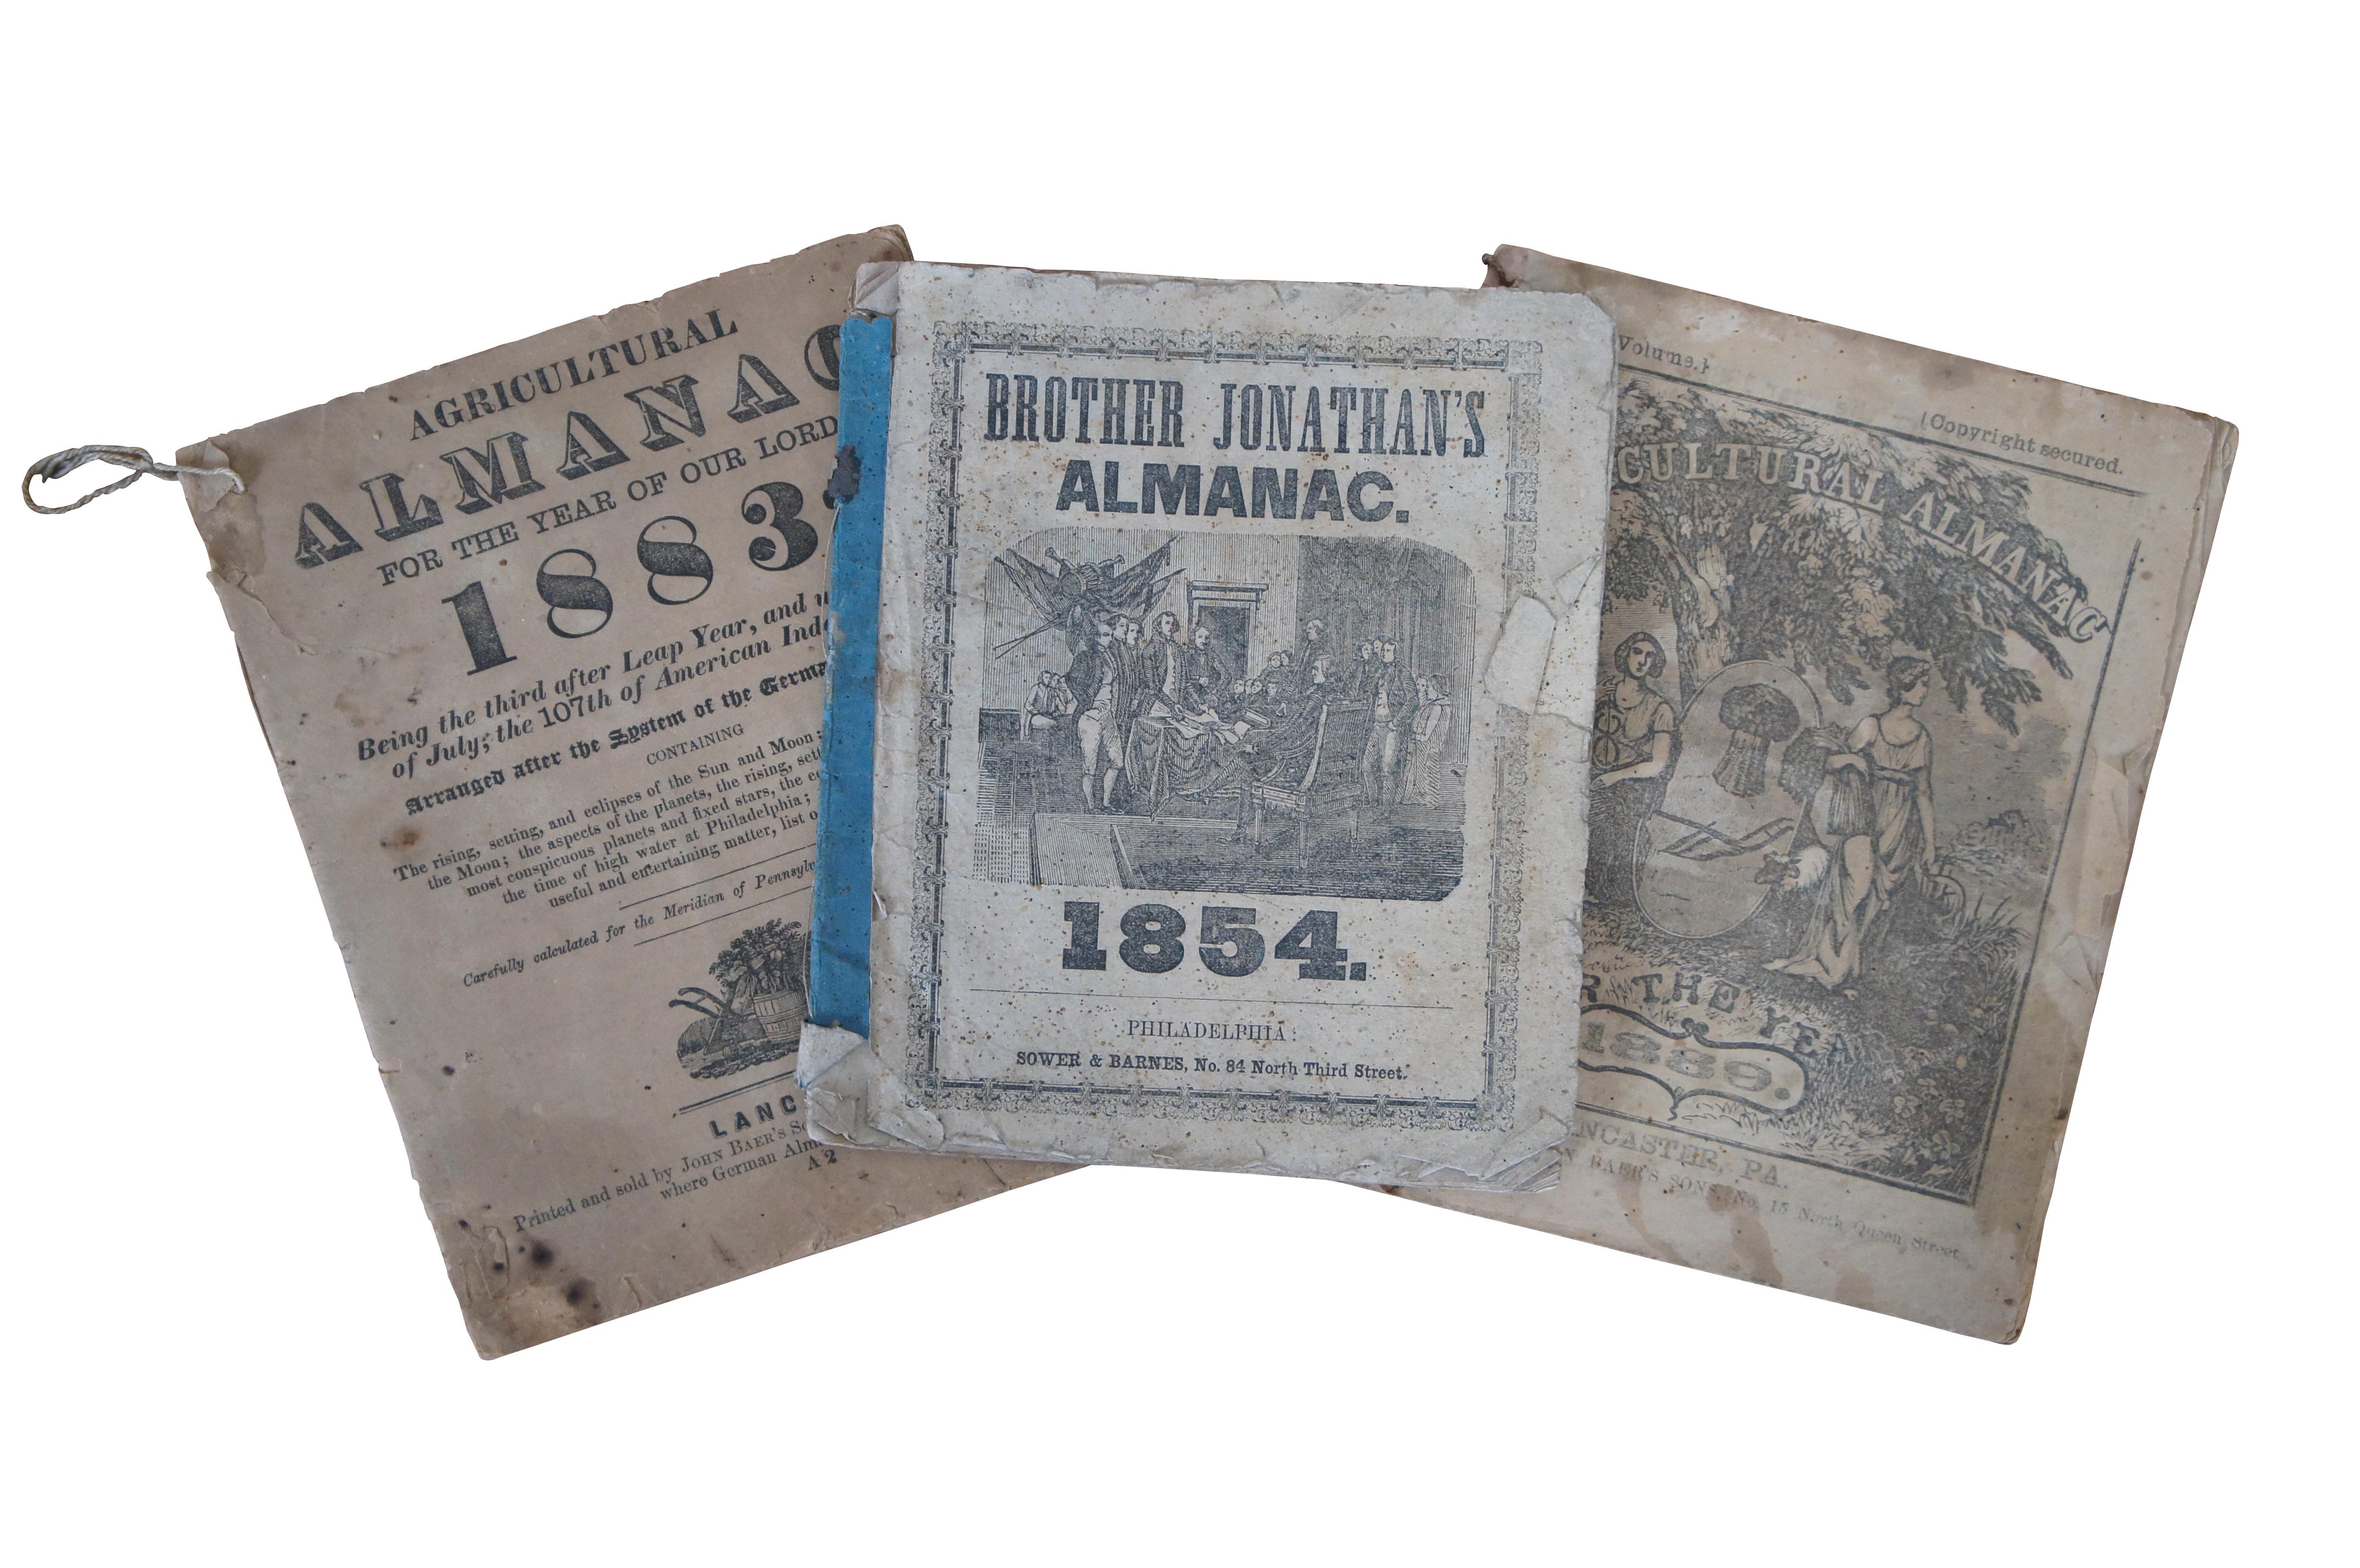 Almanach du frère Jonathan 1854 - Sower & Barnes, Philadelphie
Almanach agricole, pour l'année 1883 - Imprimé et vendu par John Baer's Sons, Lancaster
Almanach agricole pour l'année 1889 - Imprimé et vendu par John Baer's Sons, Lancaster
Facsimilie